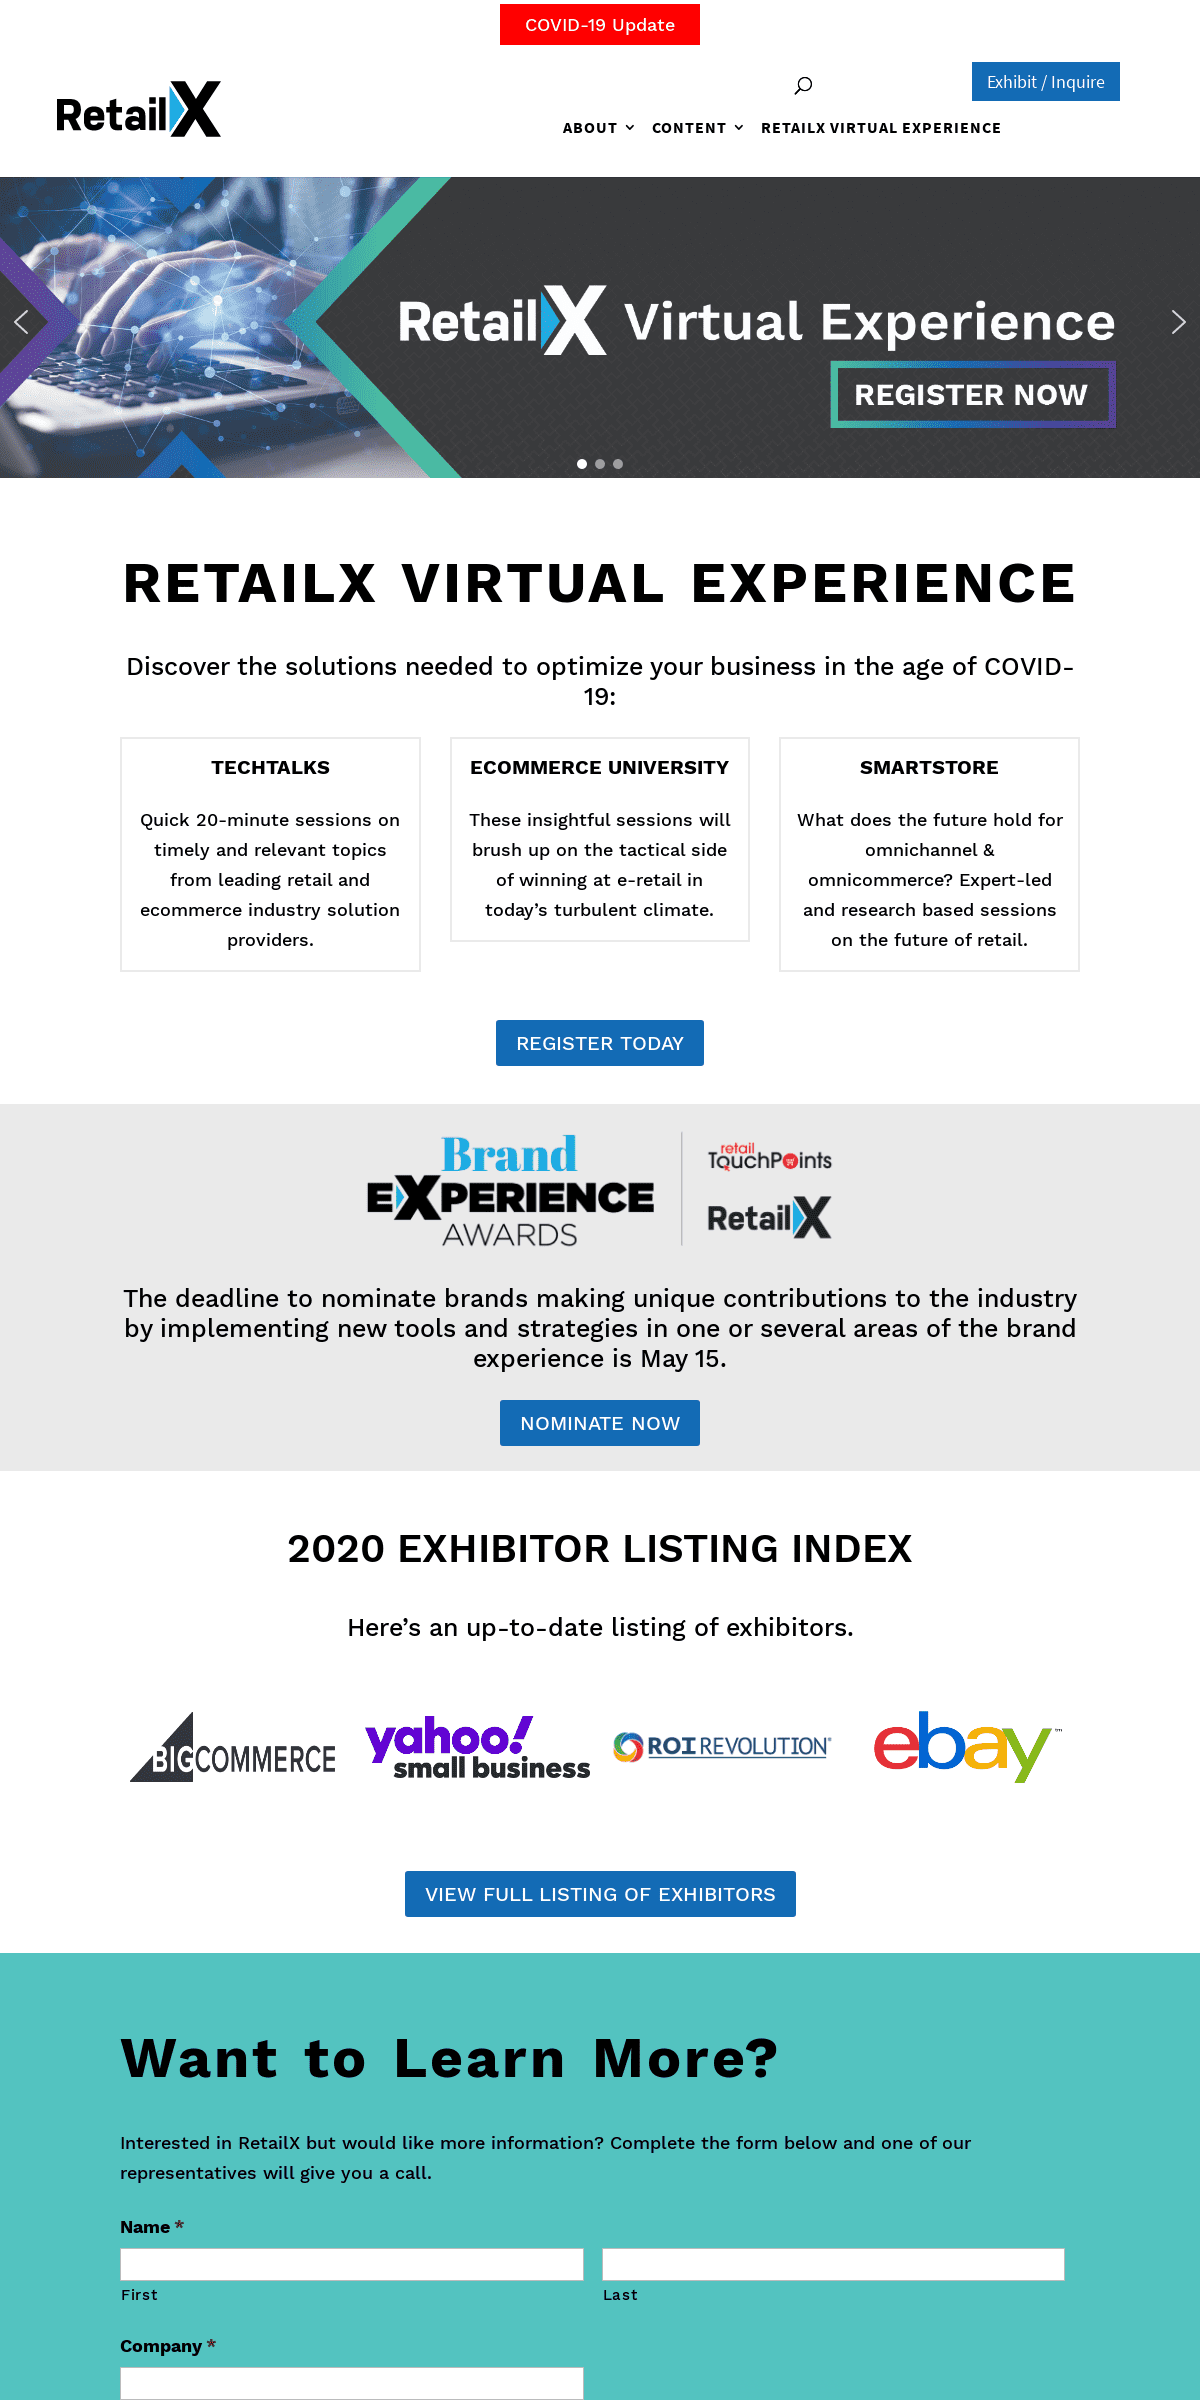 A complete backup of retailx.com